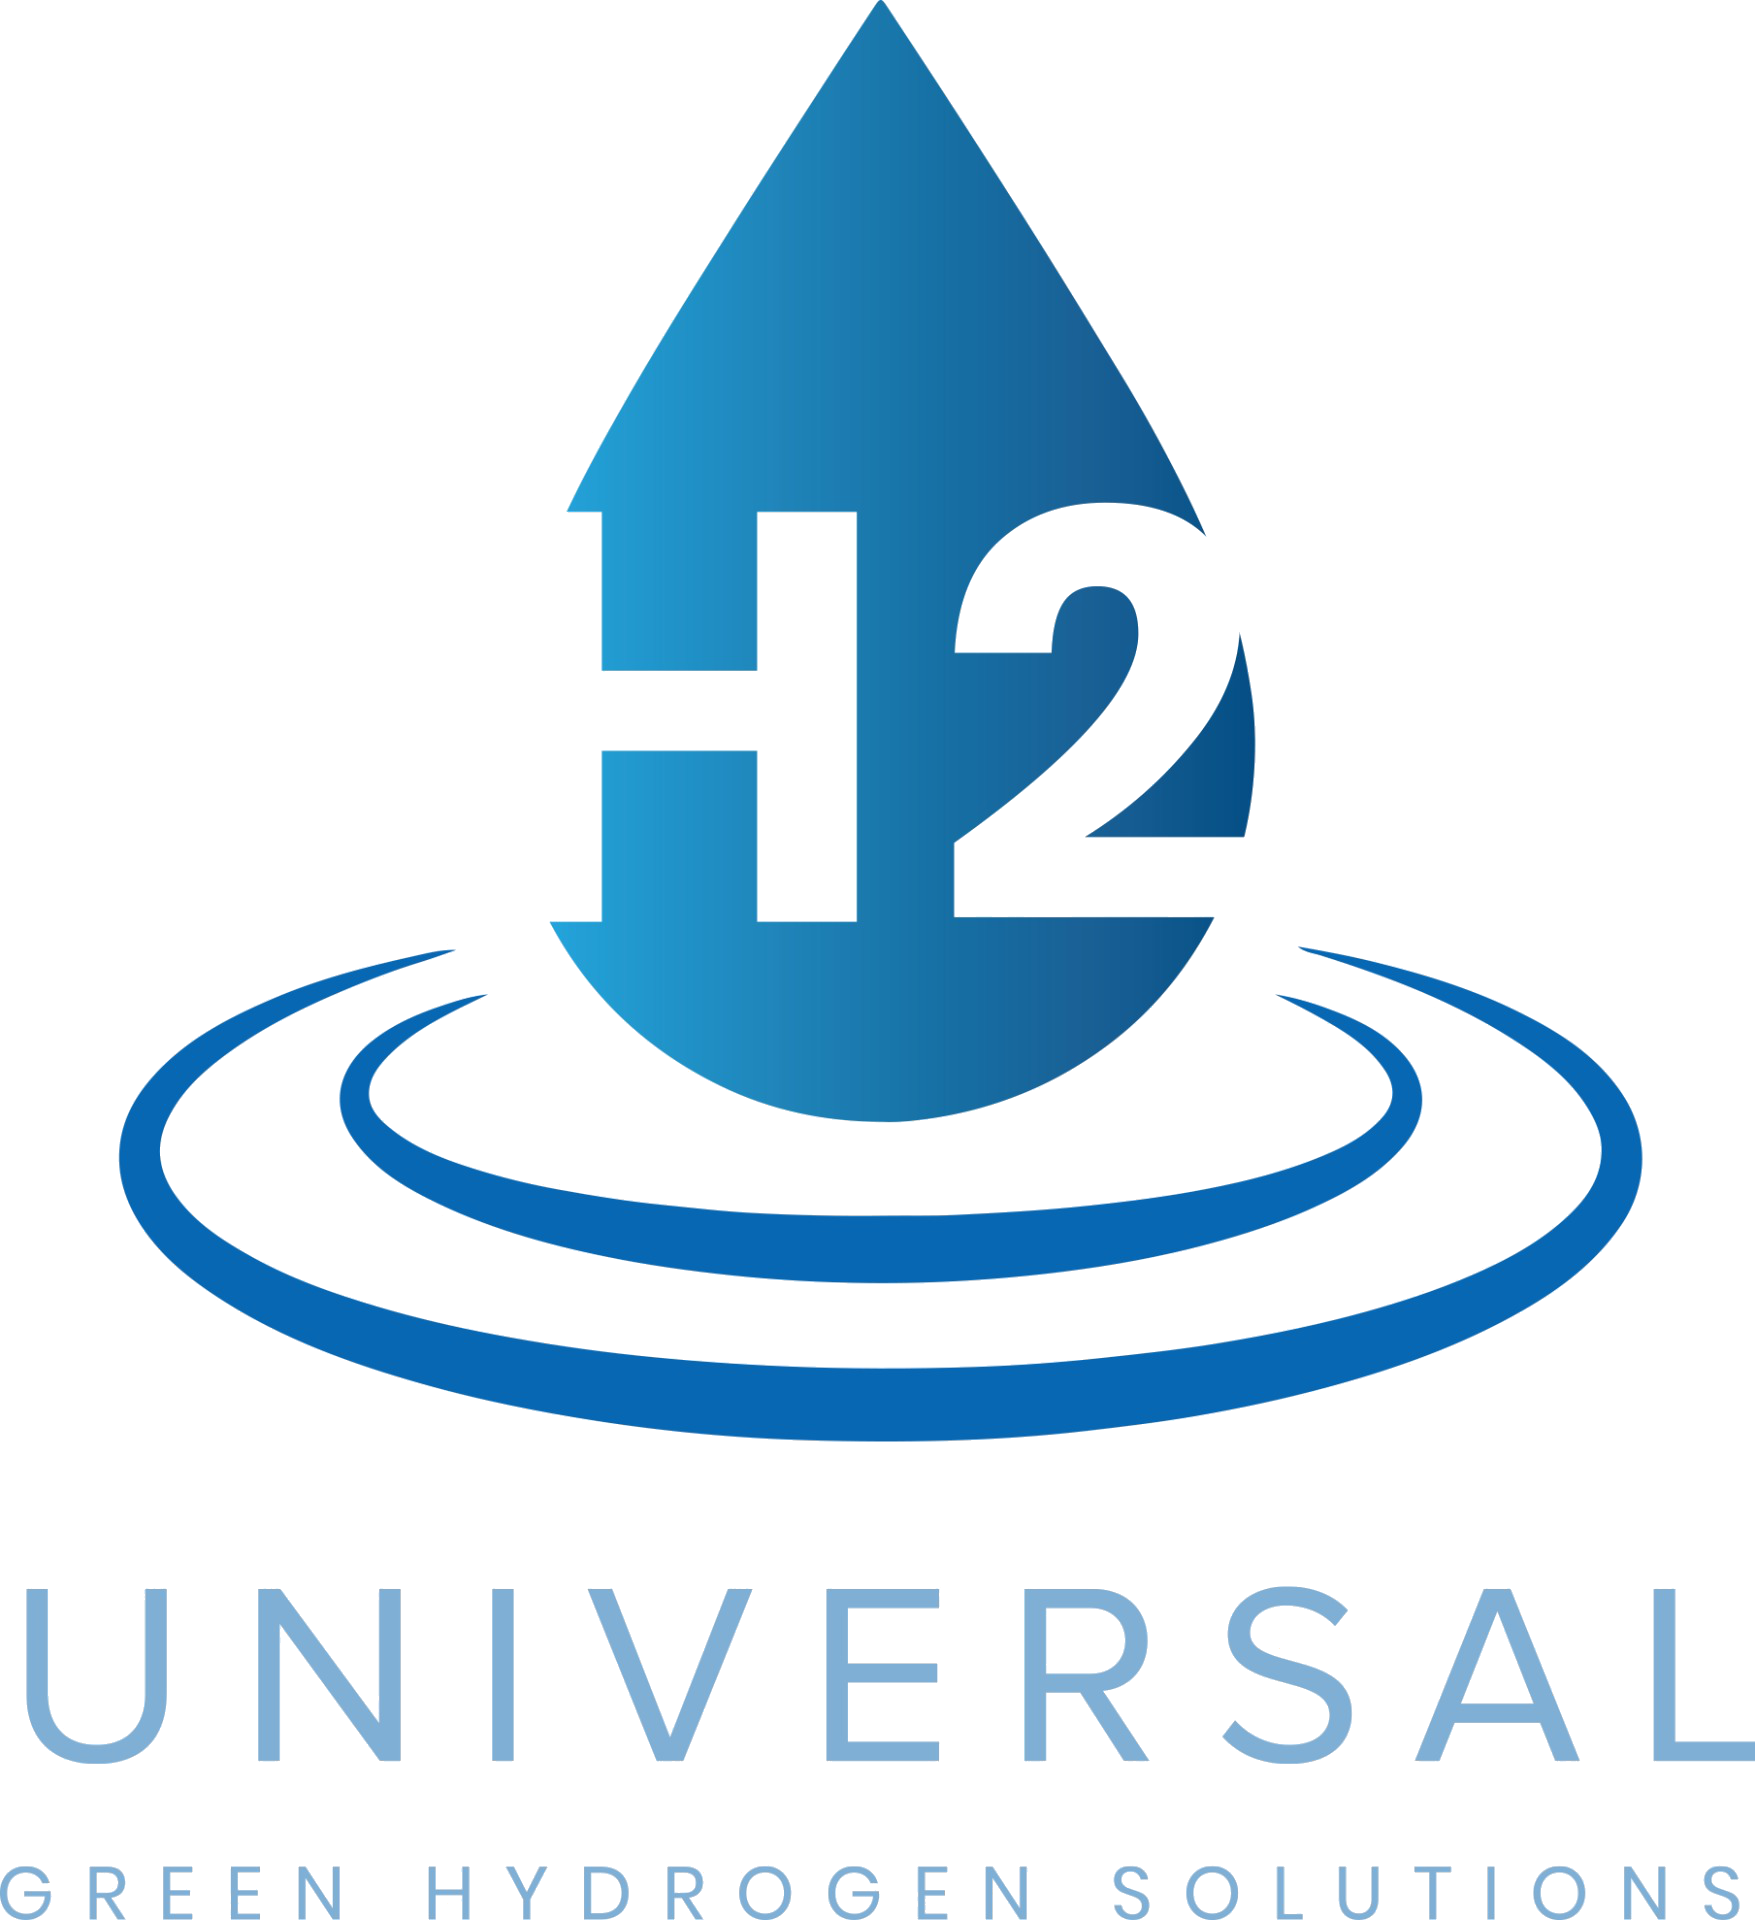 Universal Hydrogen